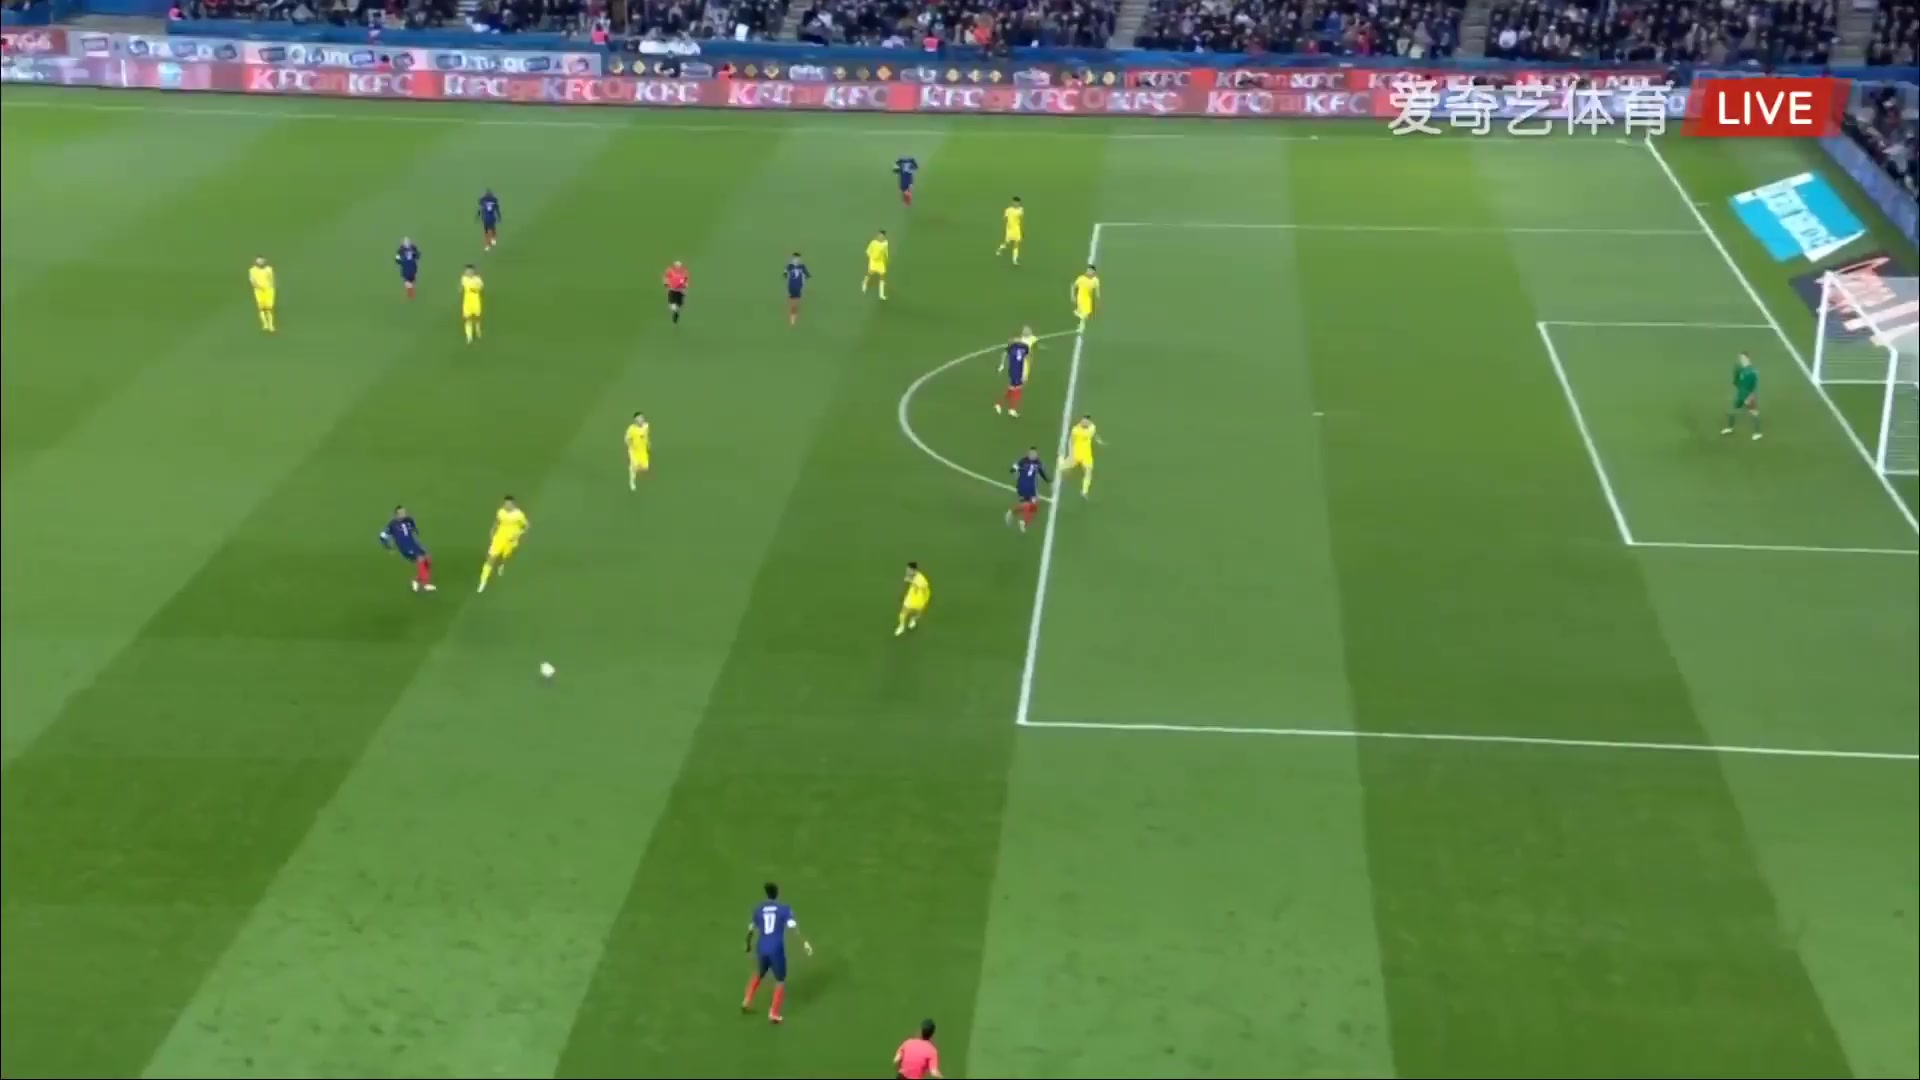 WCPEU France Vs Kazakhstan Kylian Mbappe Lottin Goal in 31 min, Score 3:0